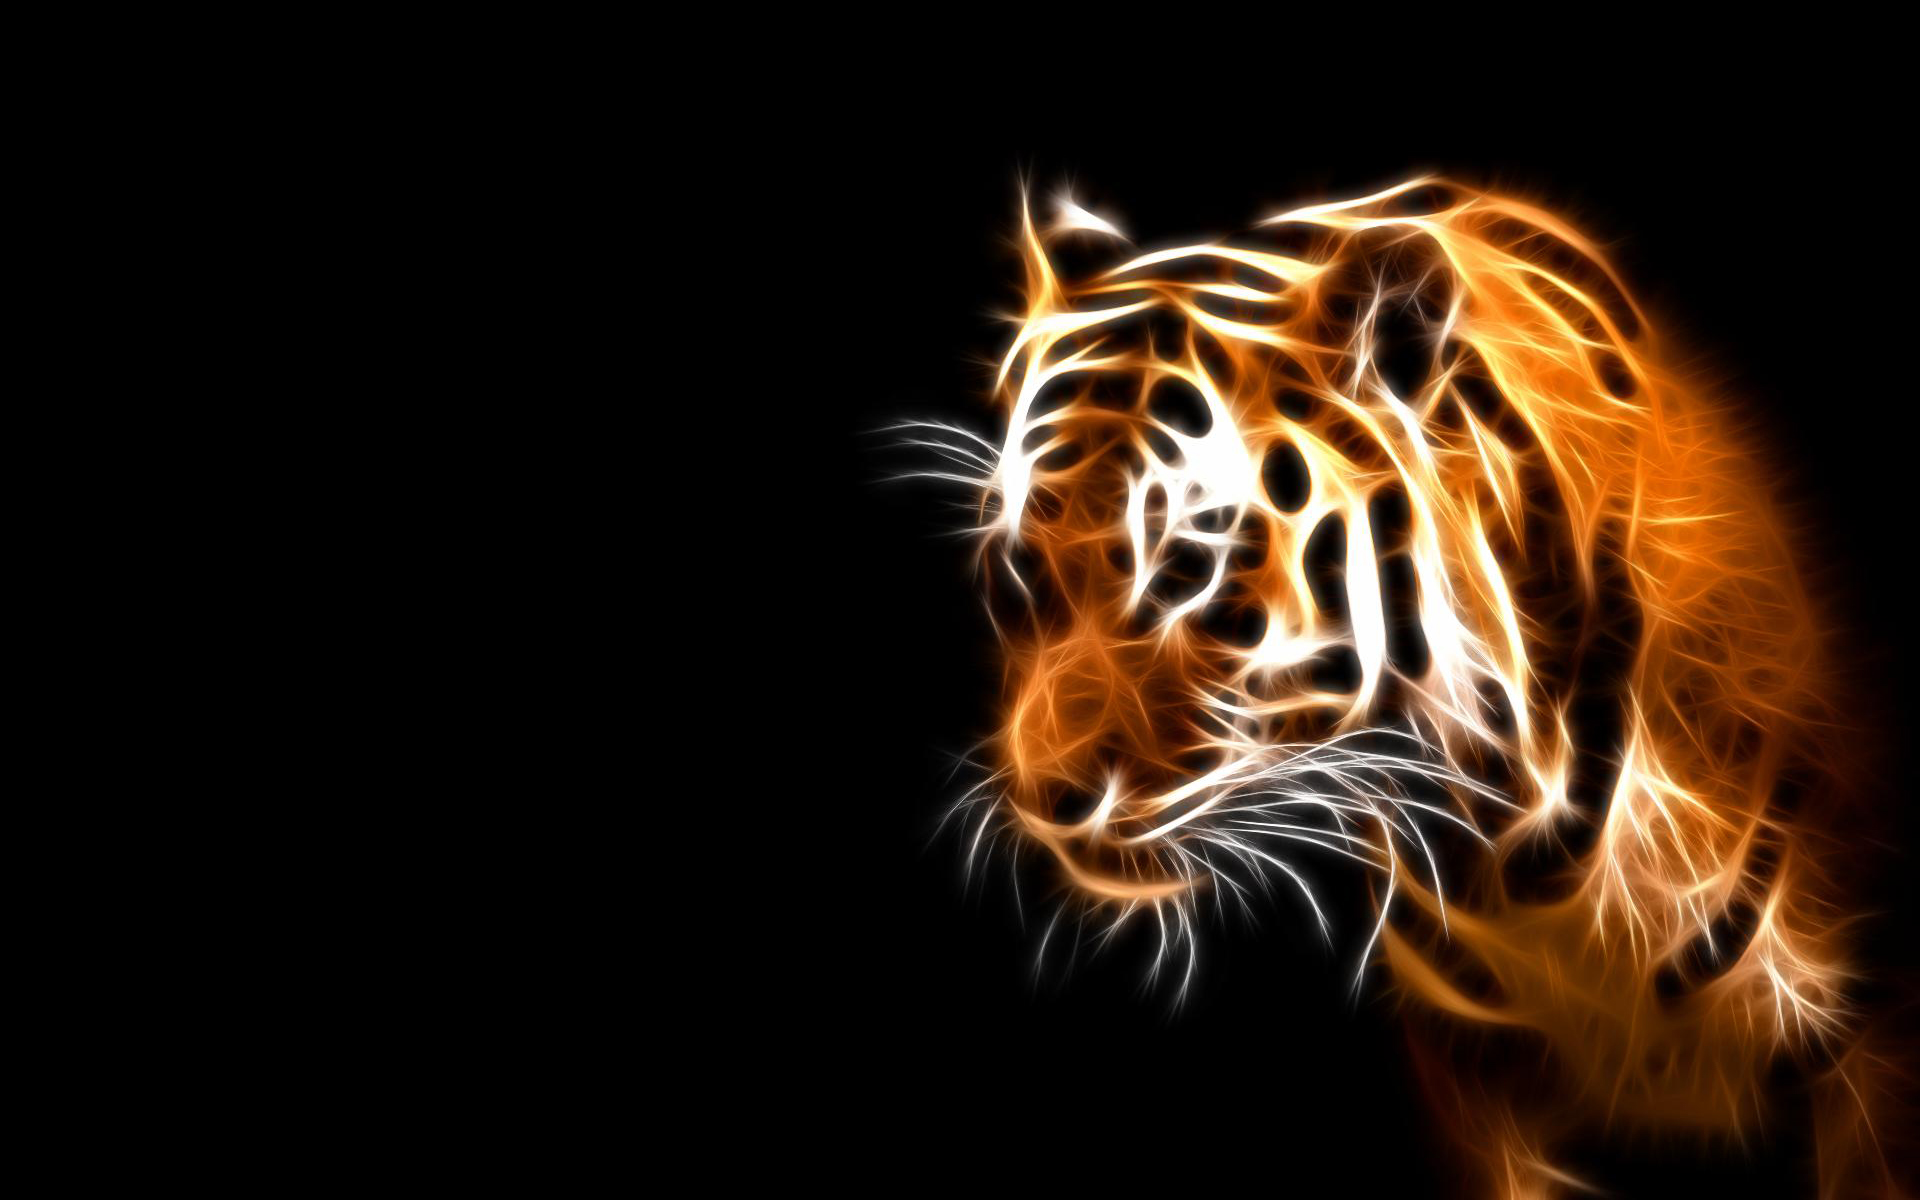 Descarga gratuita de fondo de pantalla para móvil de Animales, Tigre, Artístico.